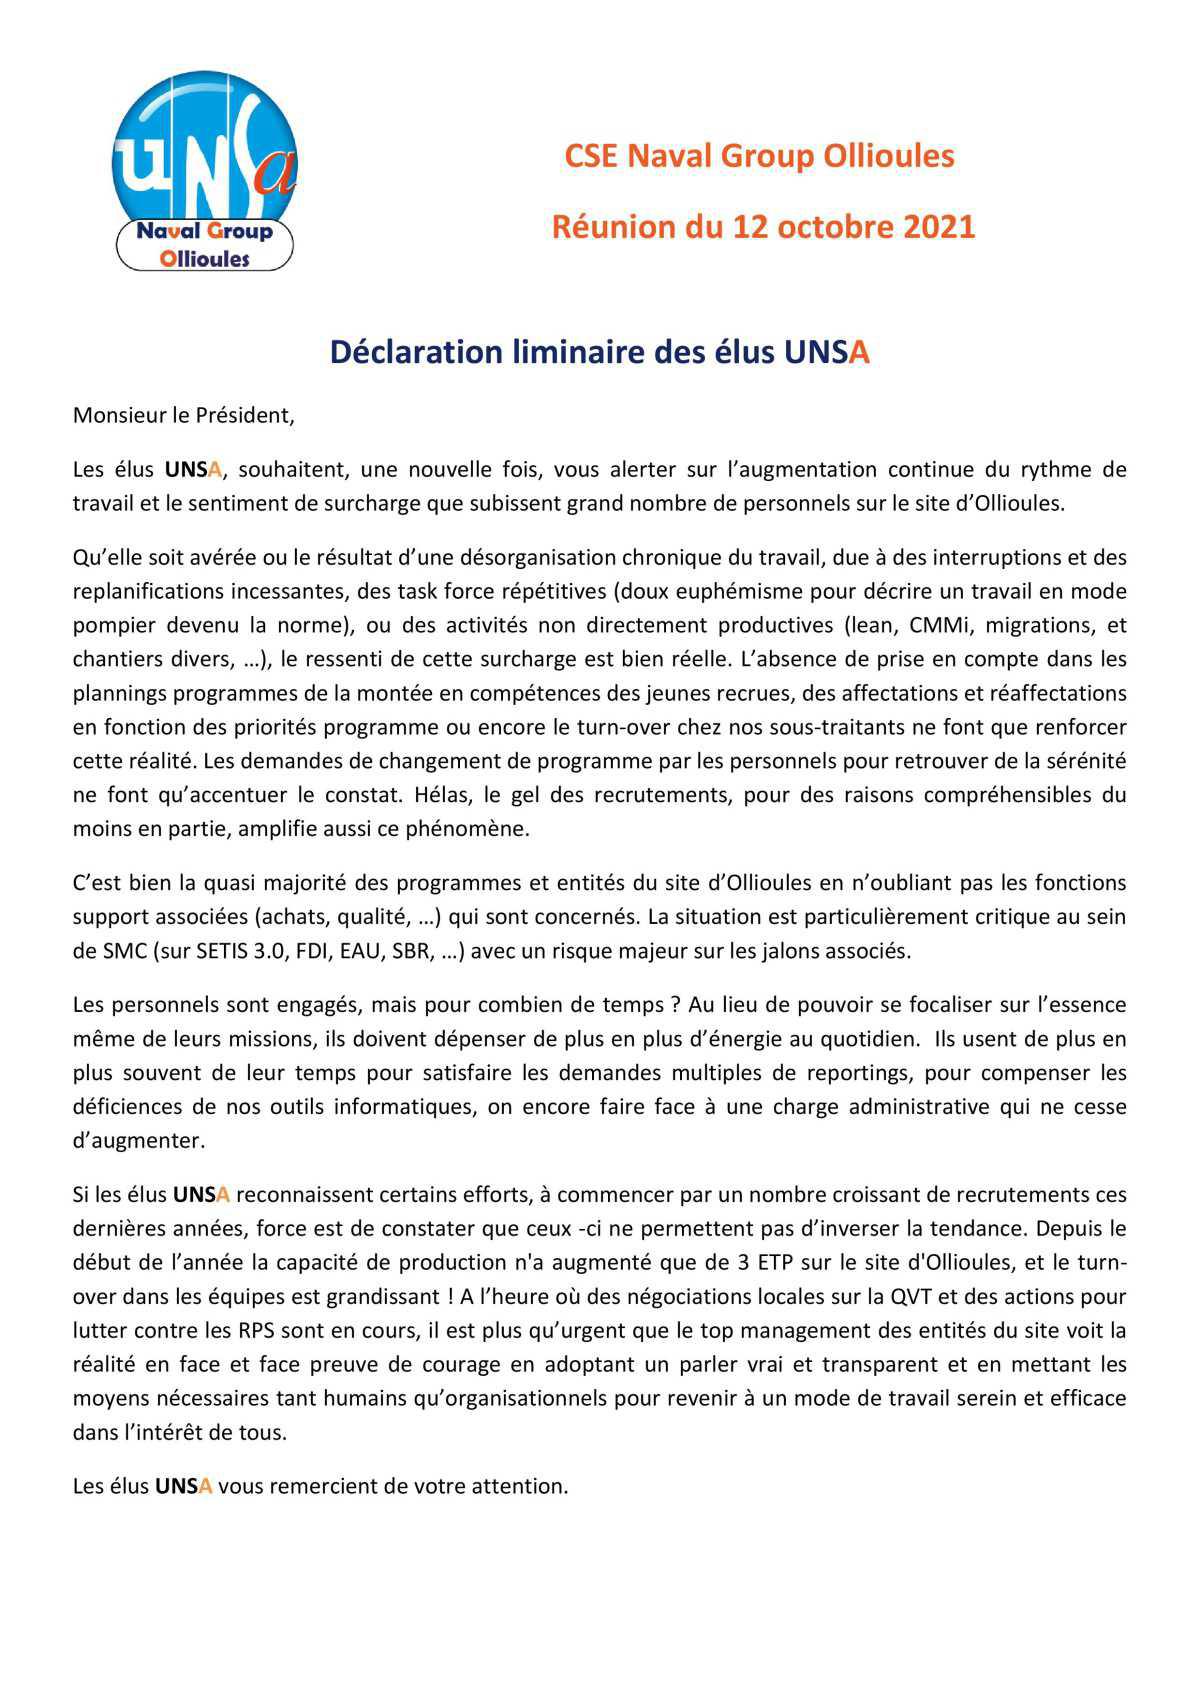 CSE d'Ollioules - réunion du 12 octobre 2021 : Déclaration Liminaire des élus UNSA